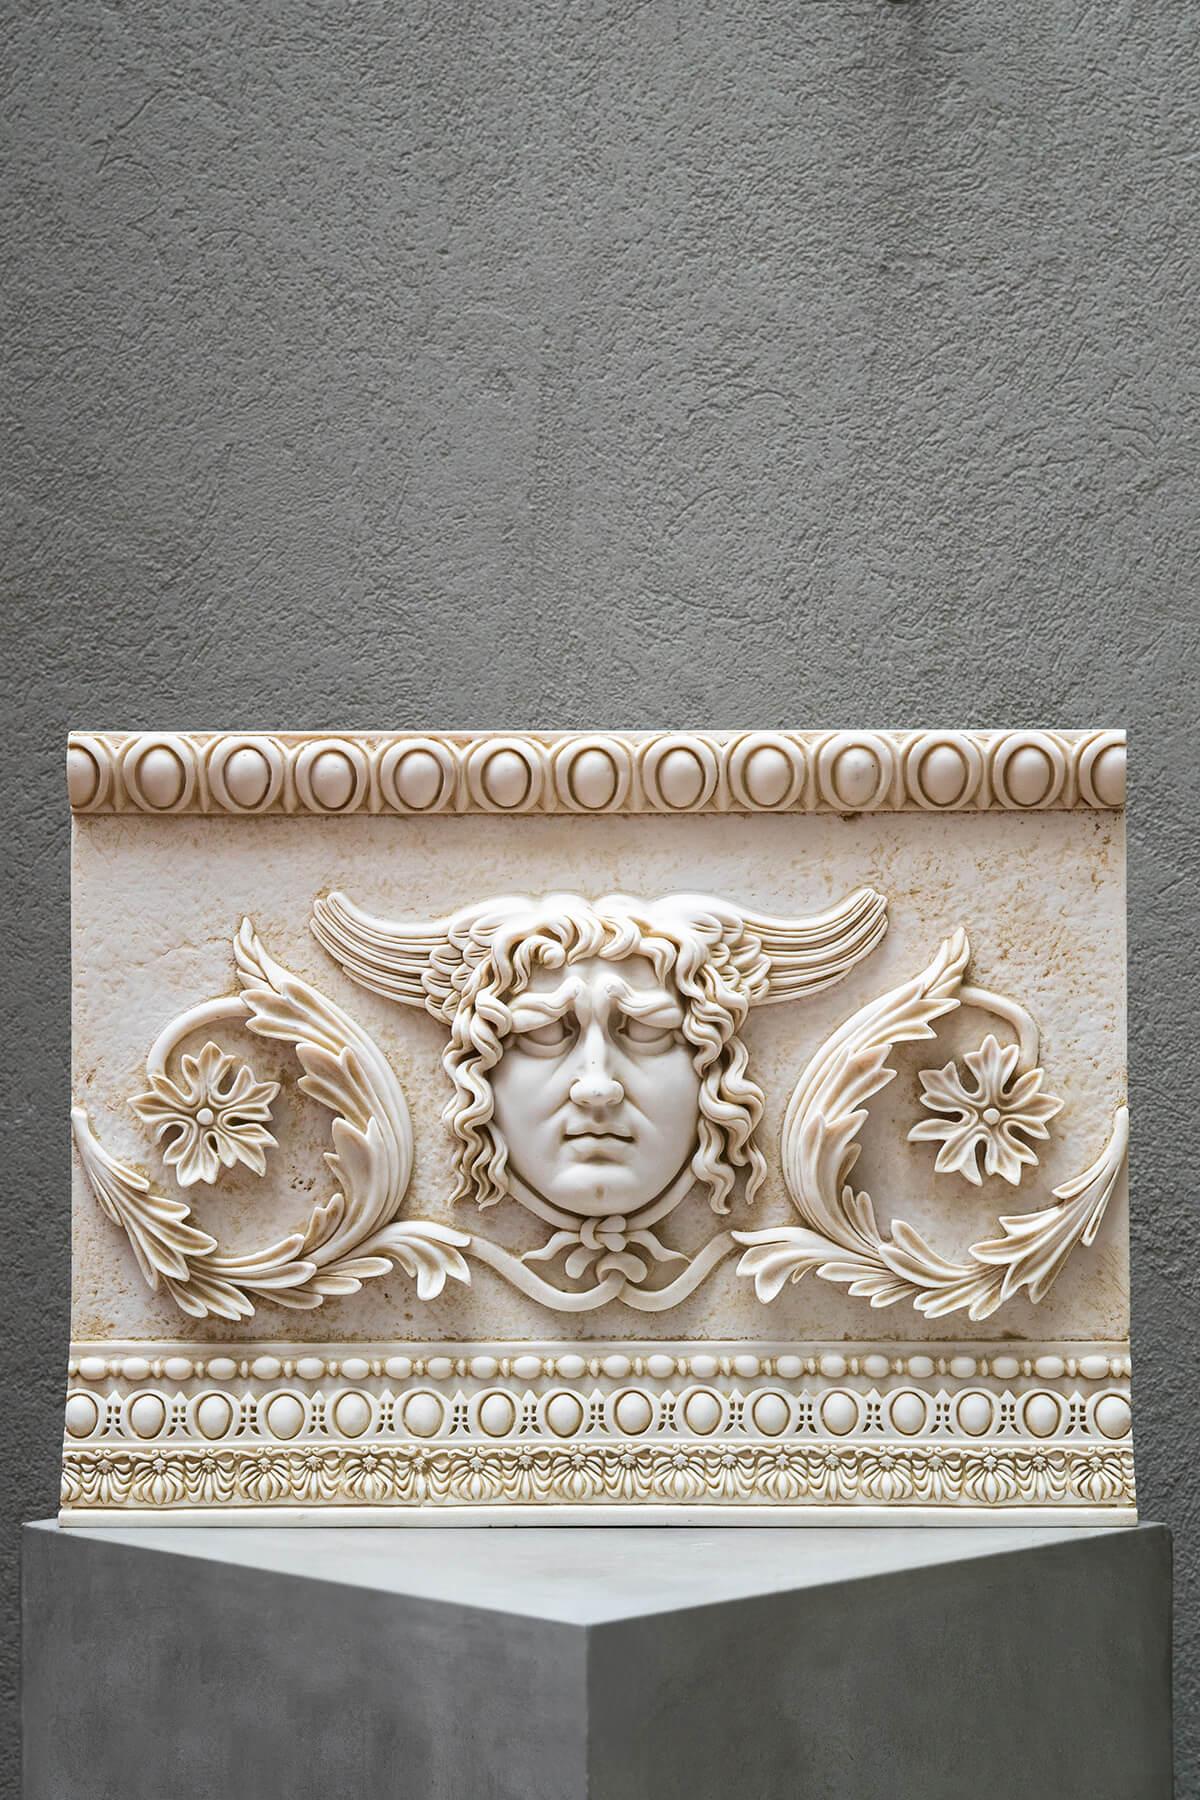 plaster of paris relief sculpture